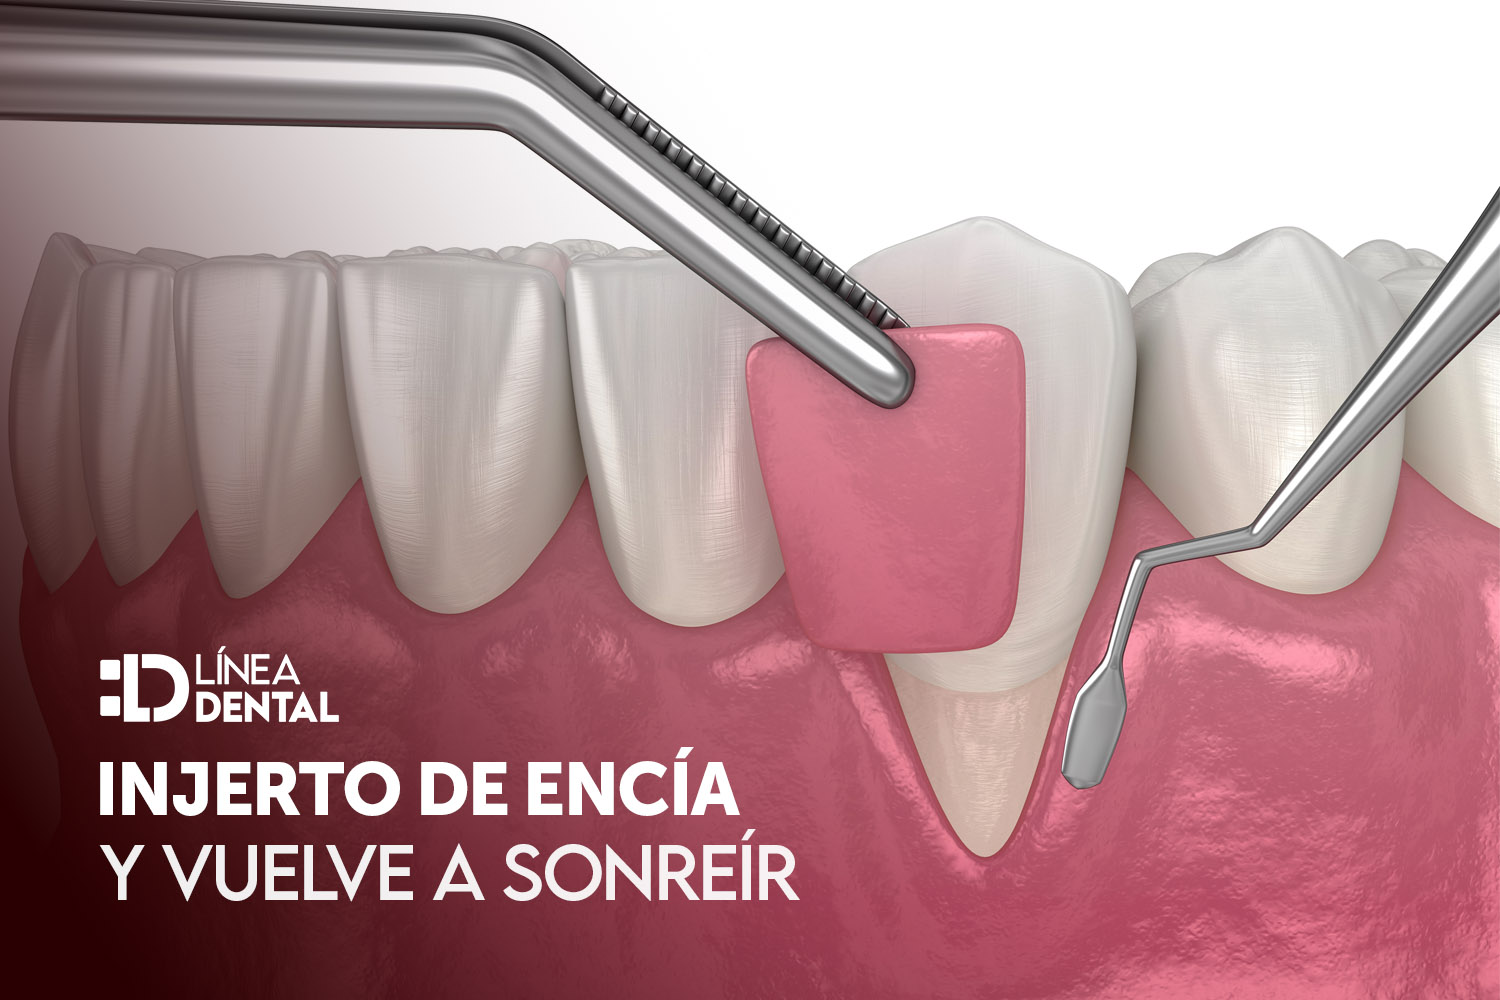 injerto-de-encia-dentista-odontologo-linea-dental-ciudad-real-miguelturra